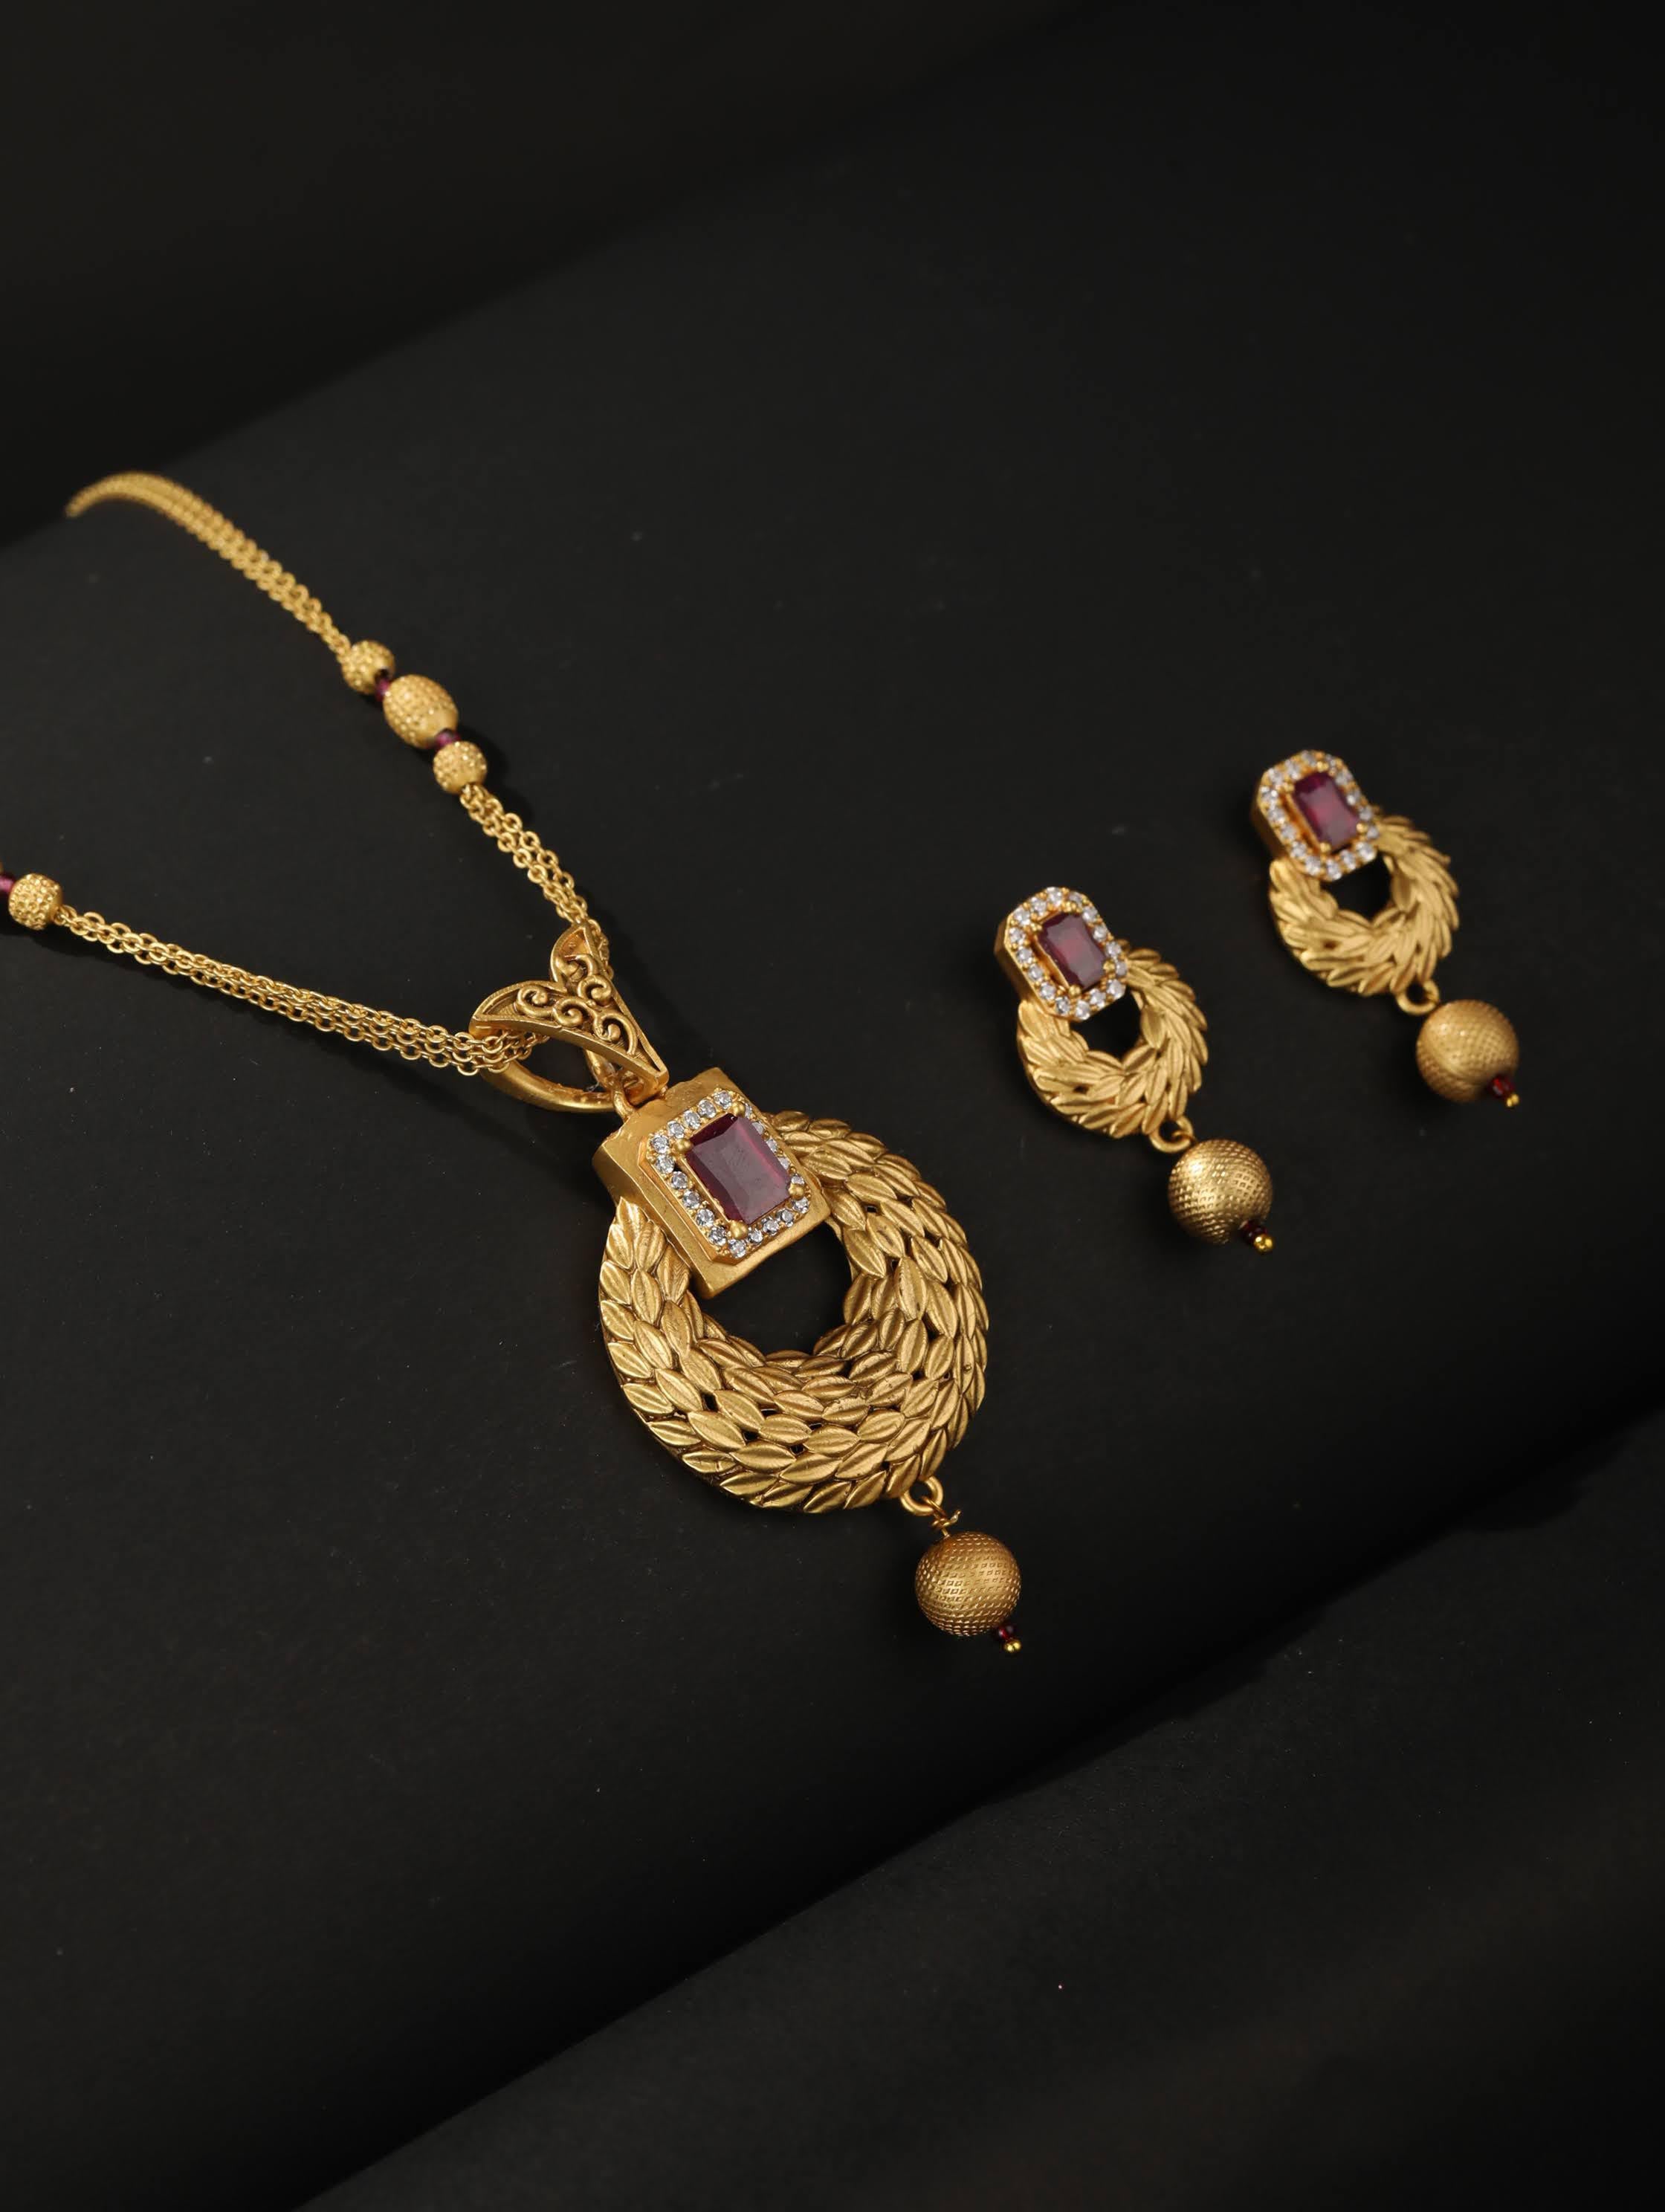 22K Gold Buttalu Jhumkas - Gold Dangle Earrings - 235-GJH1551 in 11.400  Grams